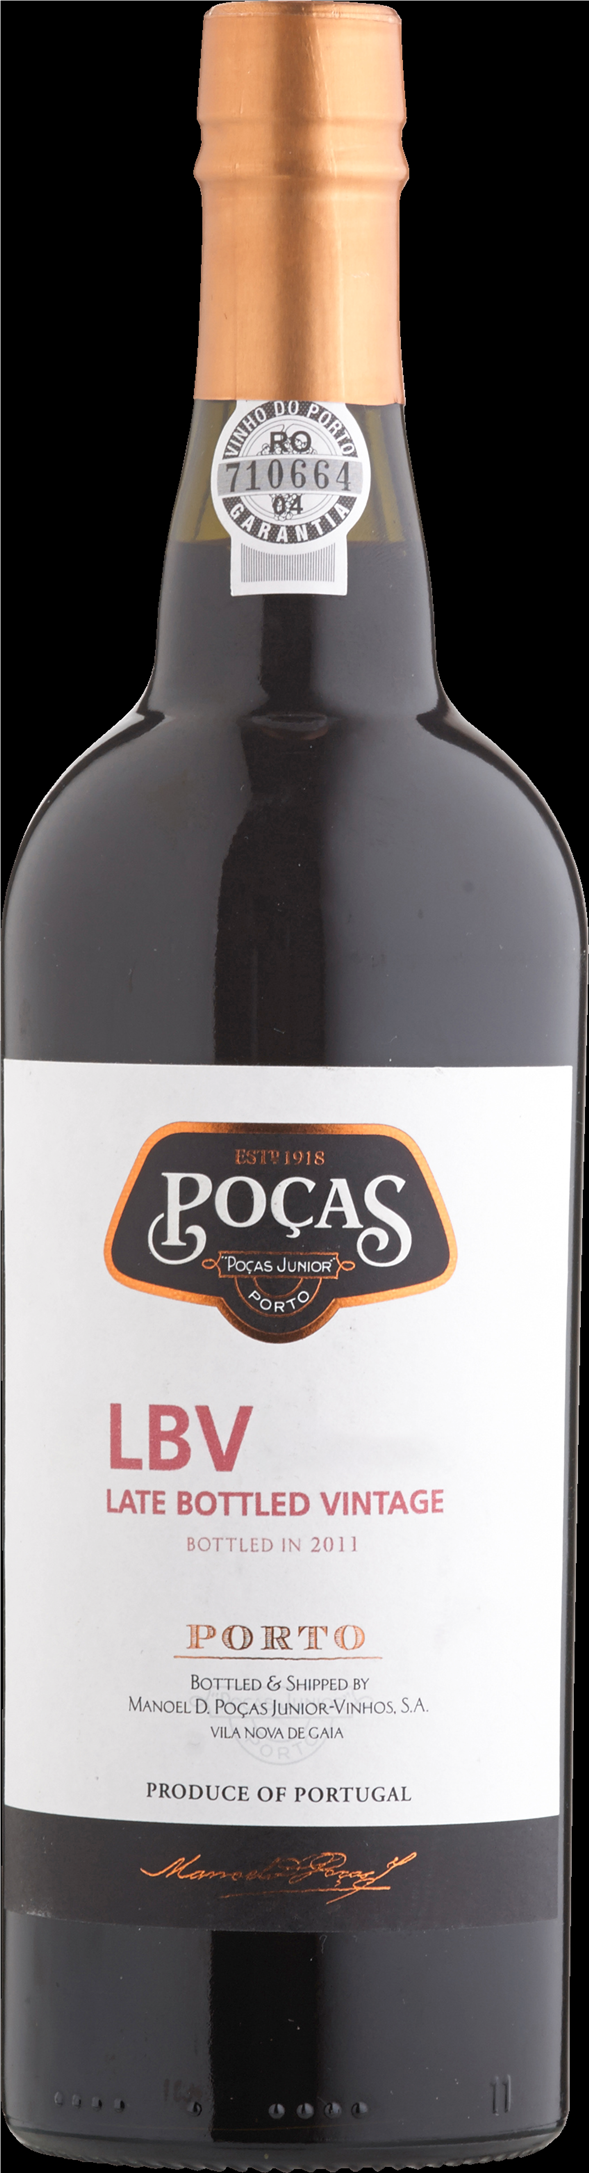 Pocas Late Bottled Vintage 2017, Portugal